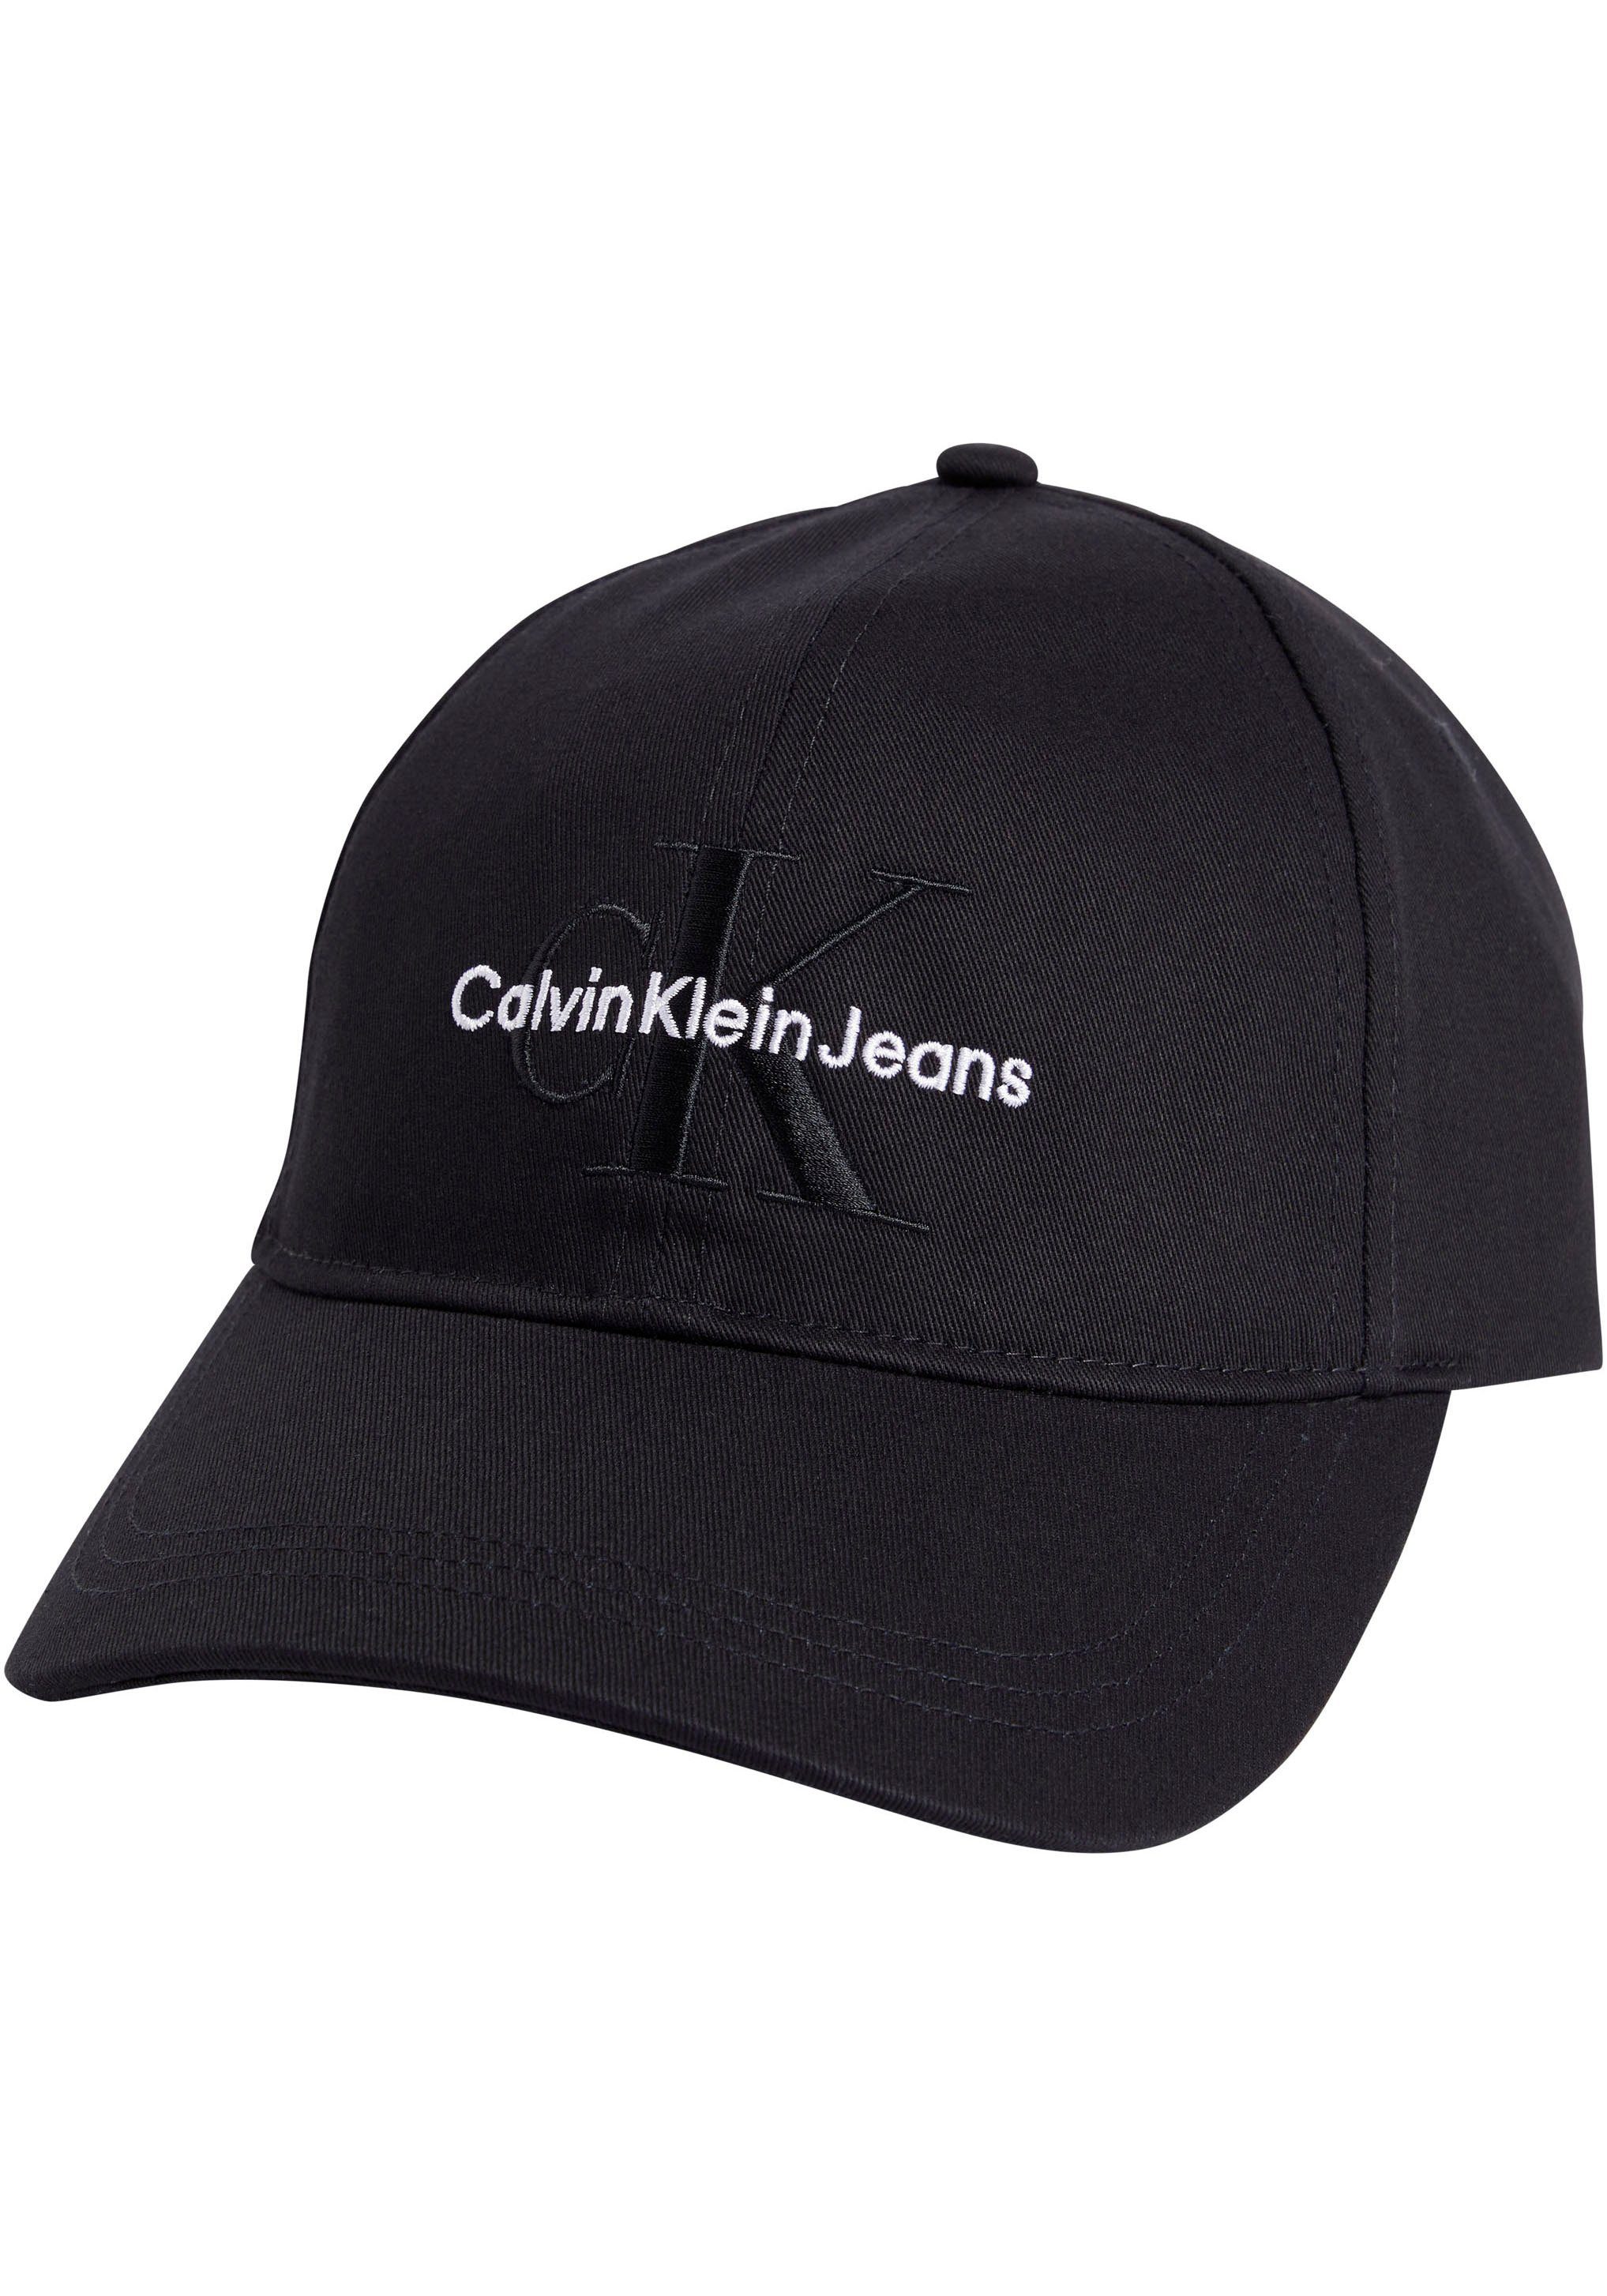 Calvin Klein Jeans Caps für Herren online kaufen | OTTO